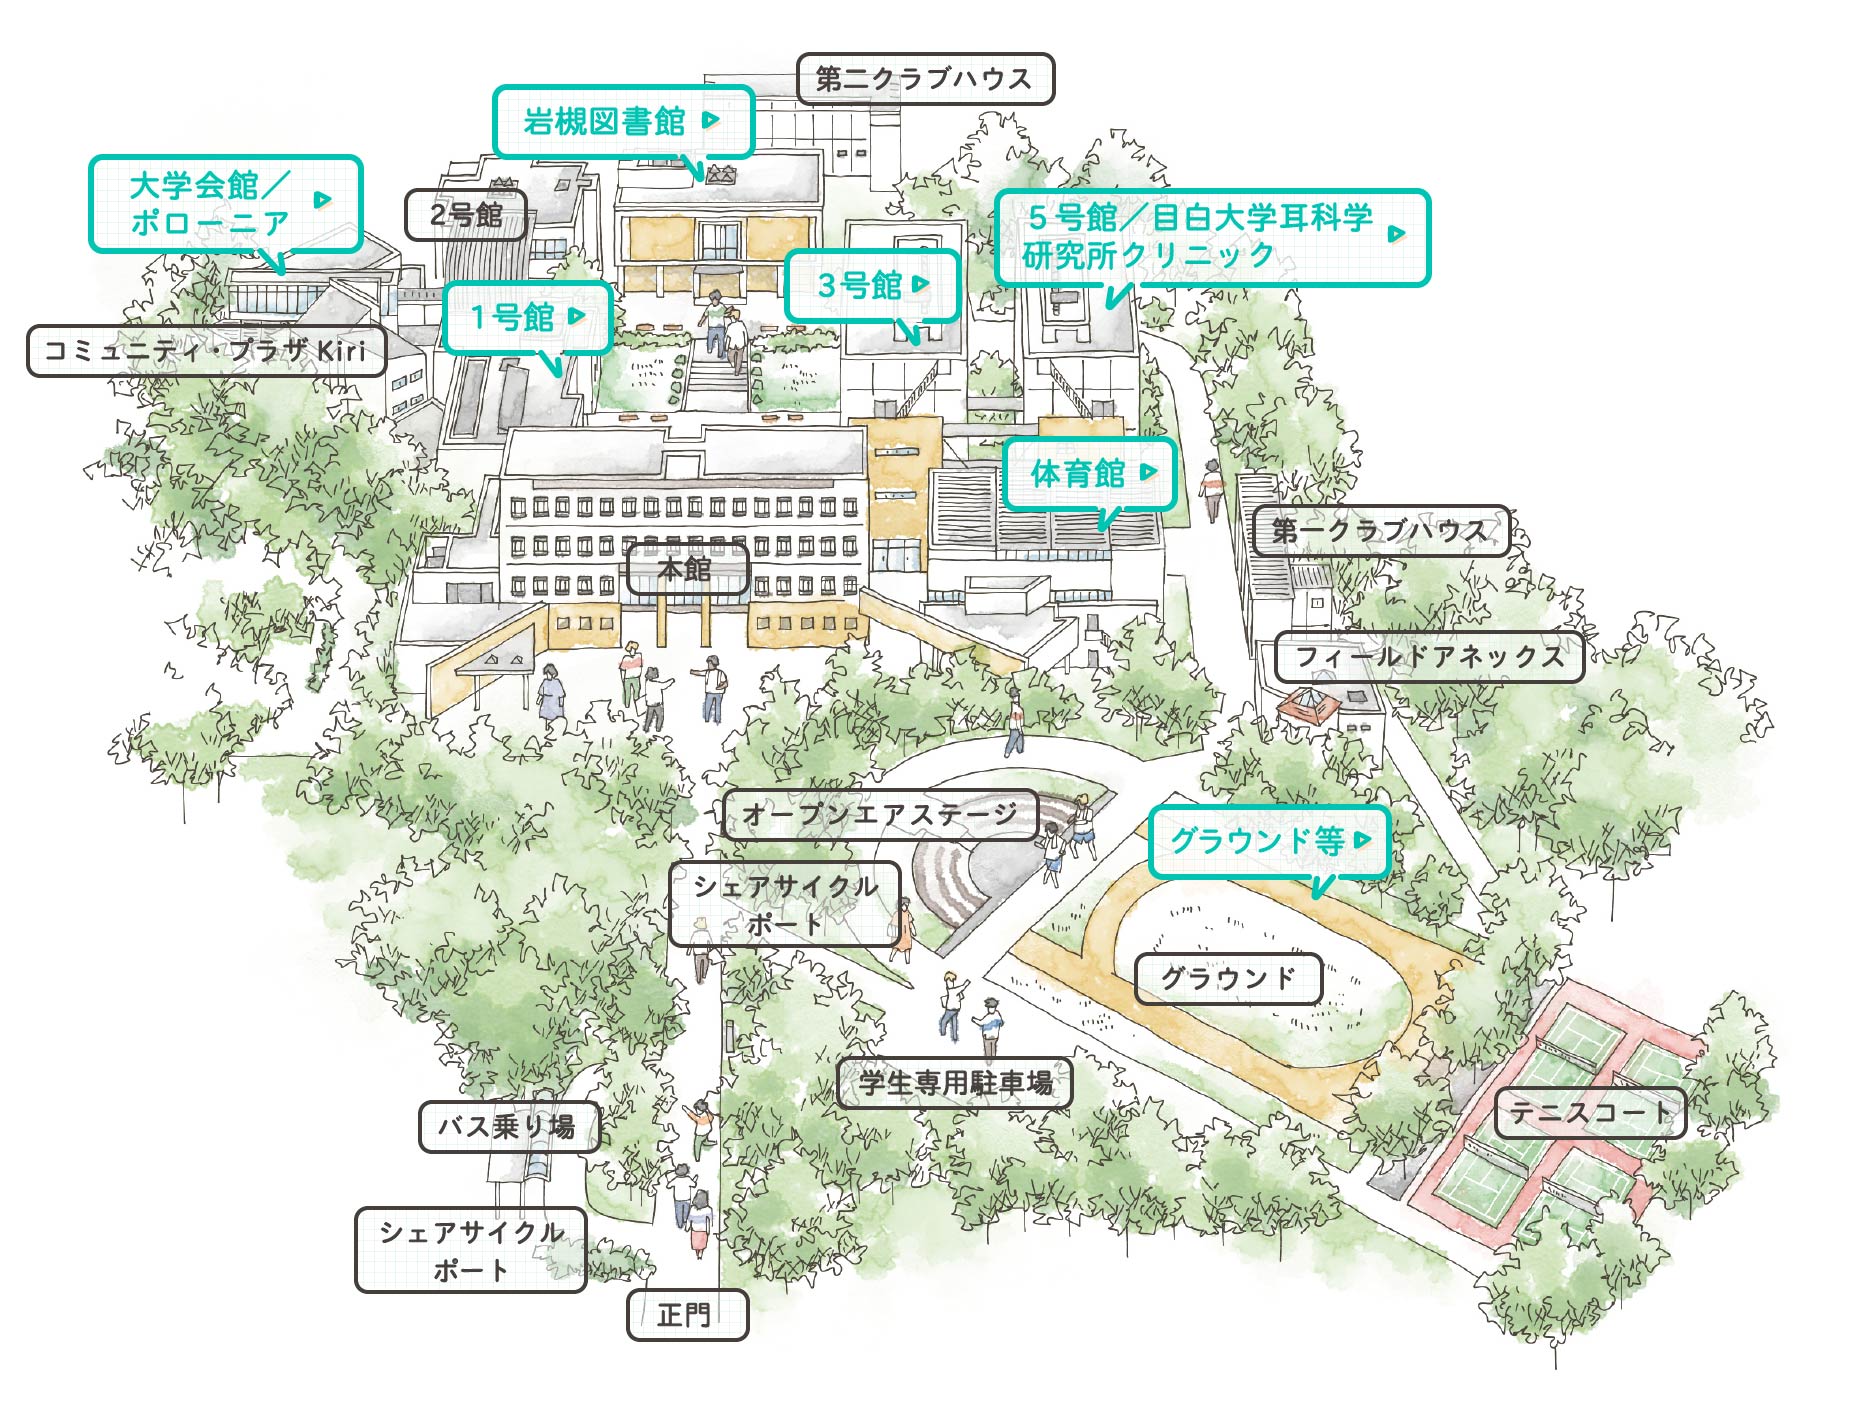 Campus Map of Iwatsuki